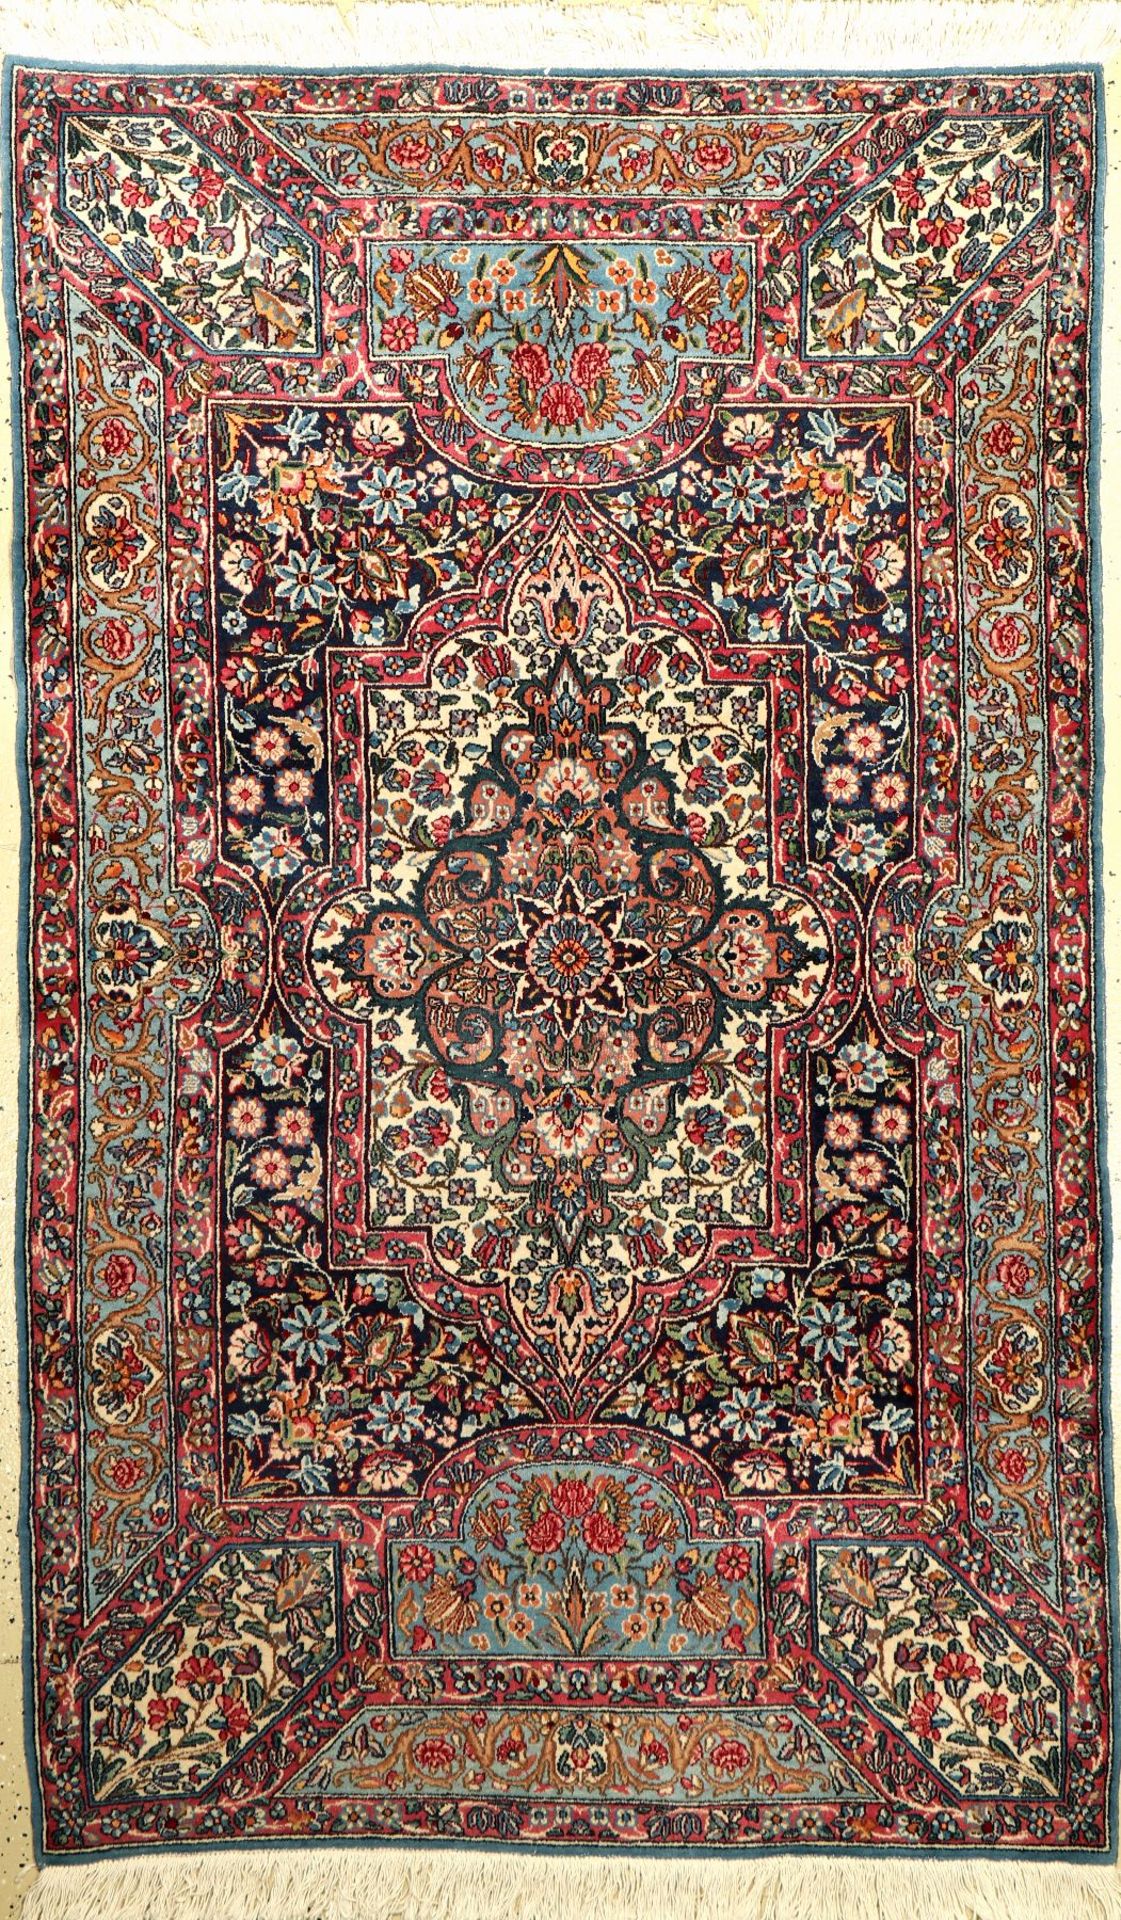 Yazd alt, Persien, um 1920/1930, Wolle auf Baumwolle, ca. 195 x 120 cm, EHZ: 2-3Yazd Rug, Persia,